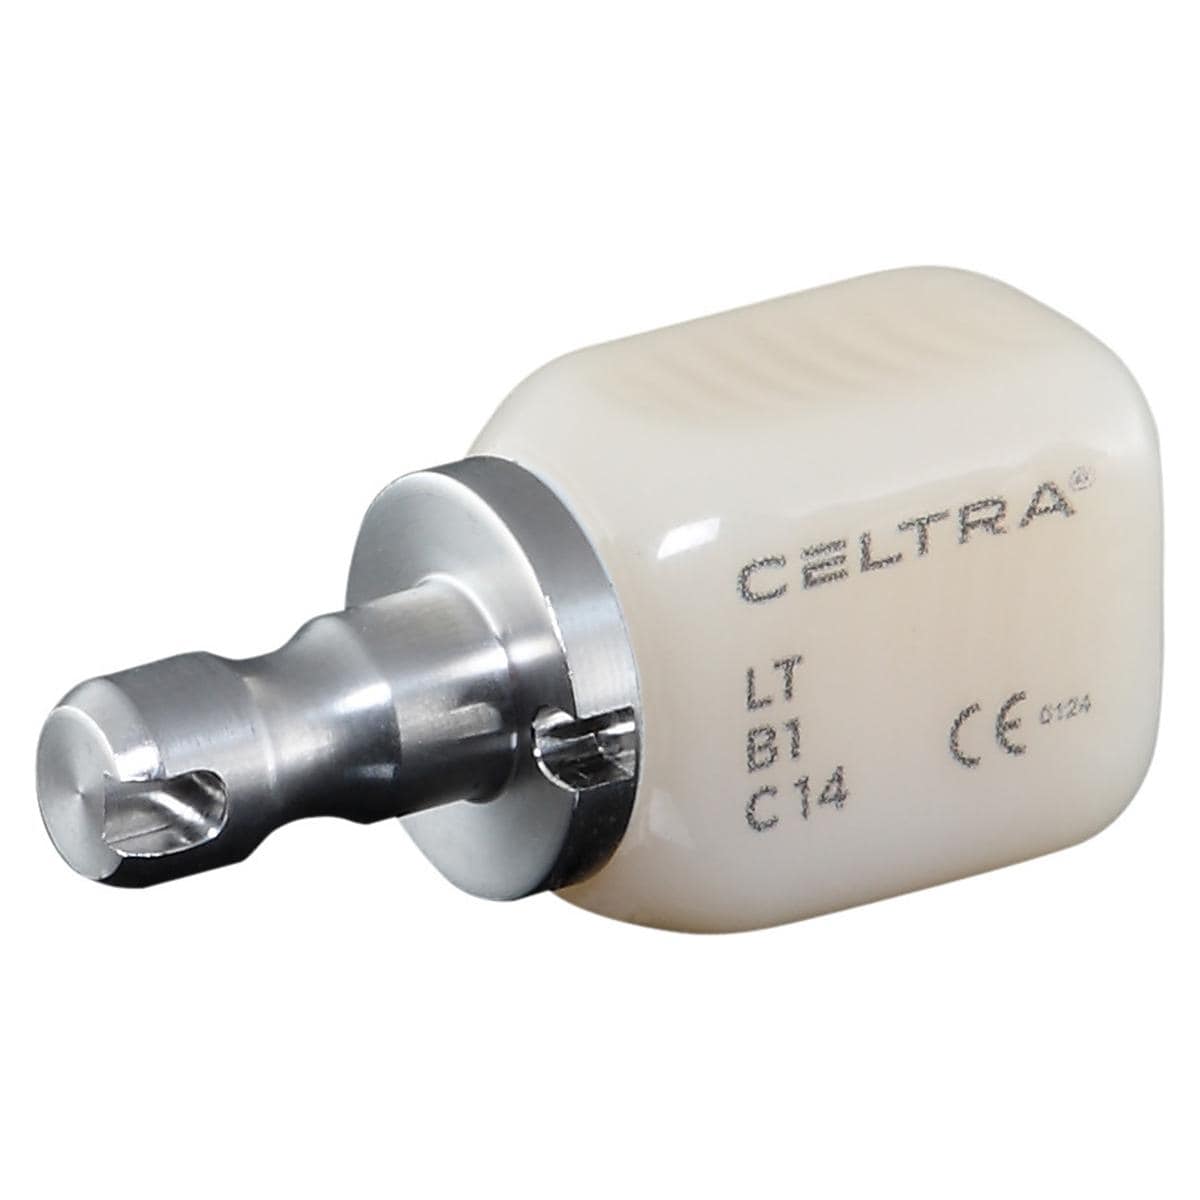 CELTRA® DUO LT - Nachfüllpackung - B1, Größe C14, Packung 4 Stück